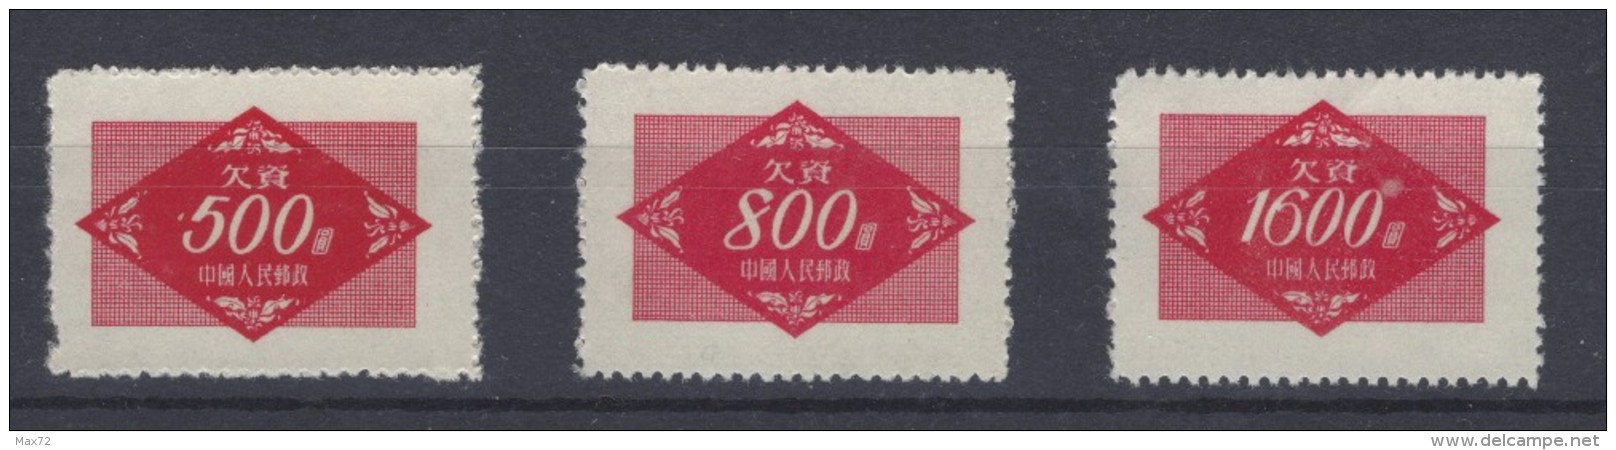 1954 CHINA MILITAR STAMPS MICHEL NR 12/14 MNH WG LIKE USUAL - Militärpostmarken